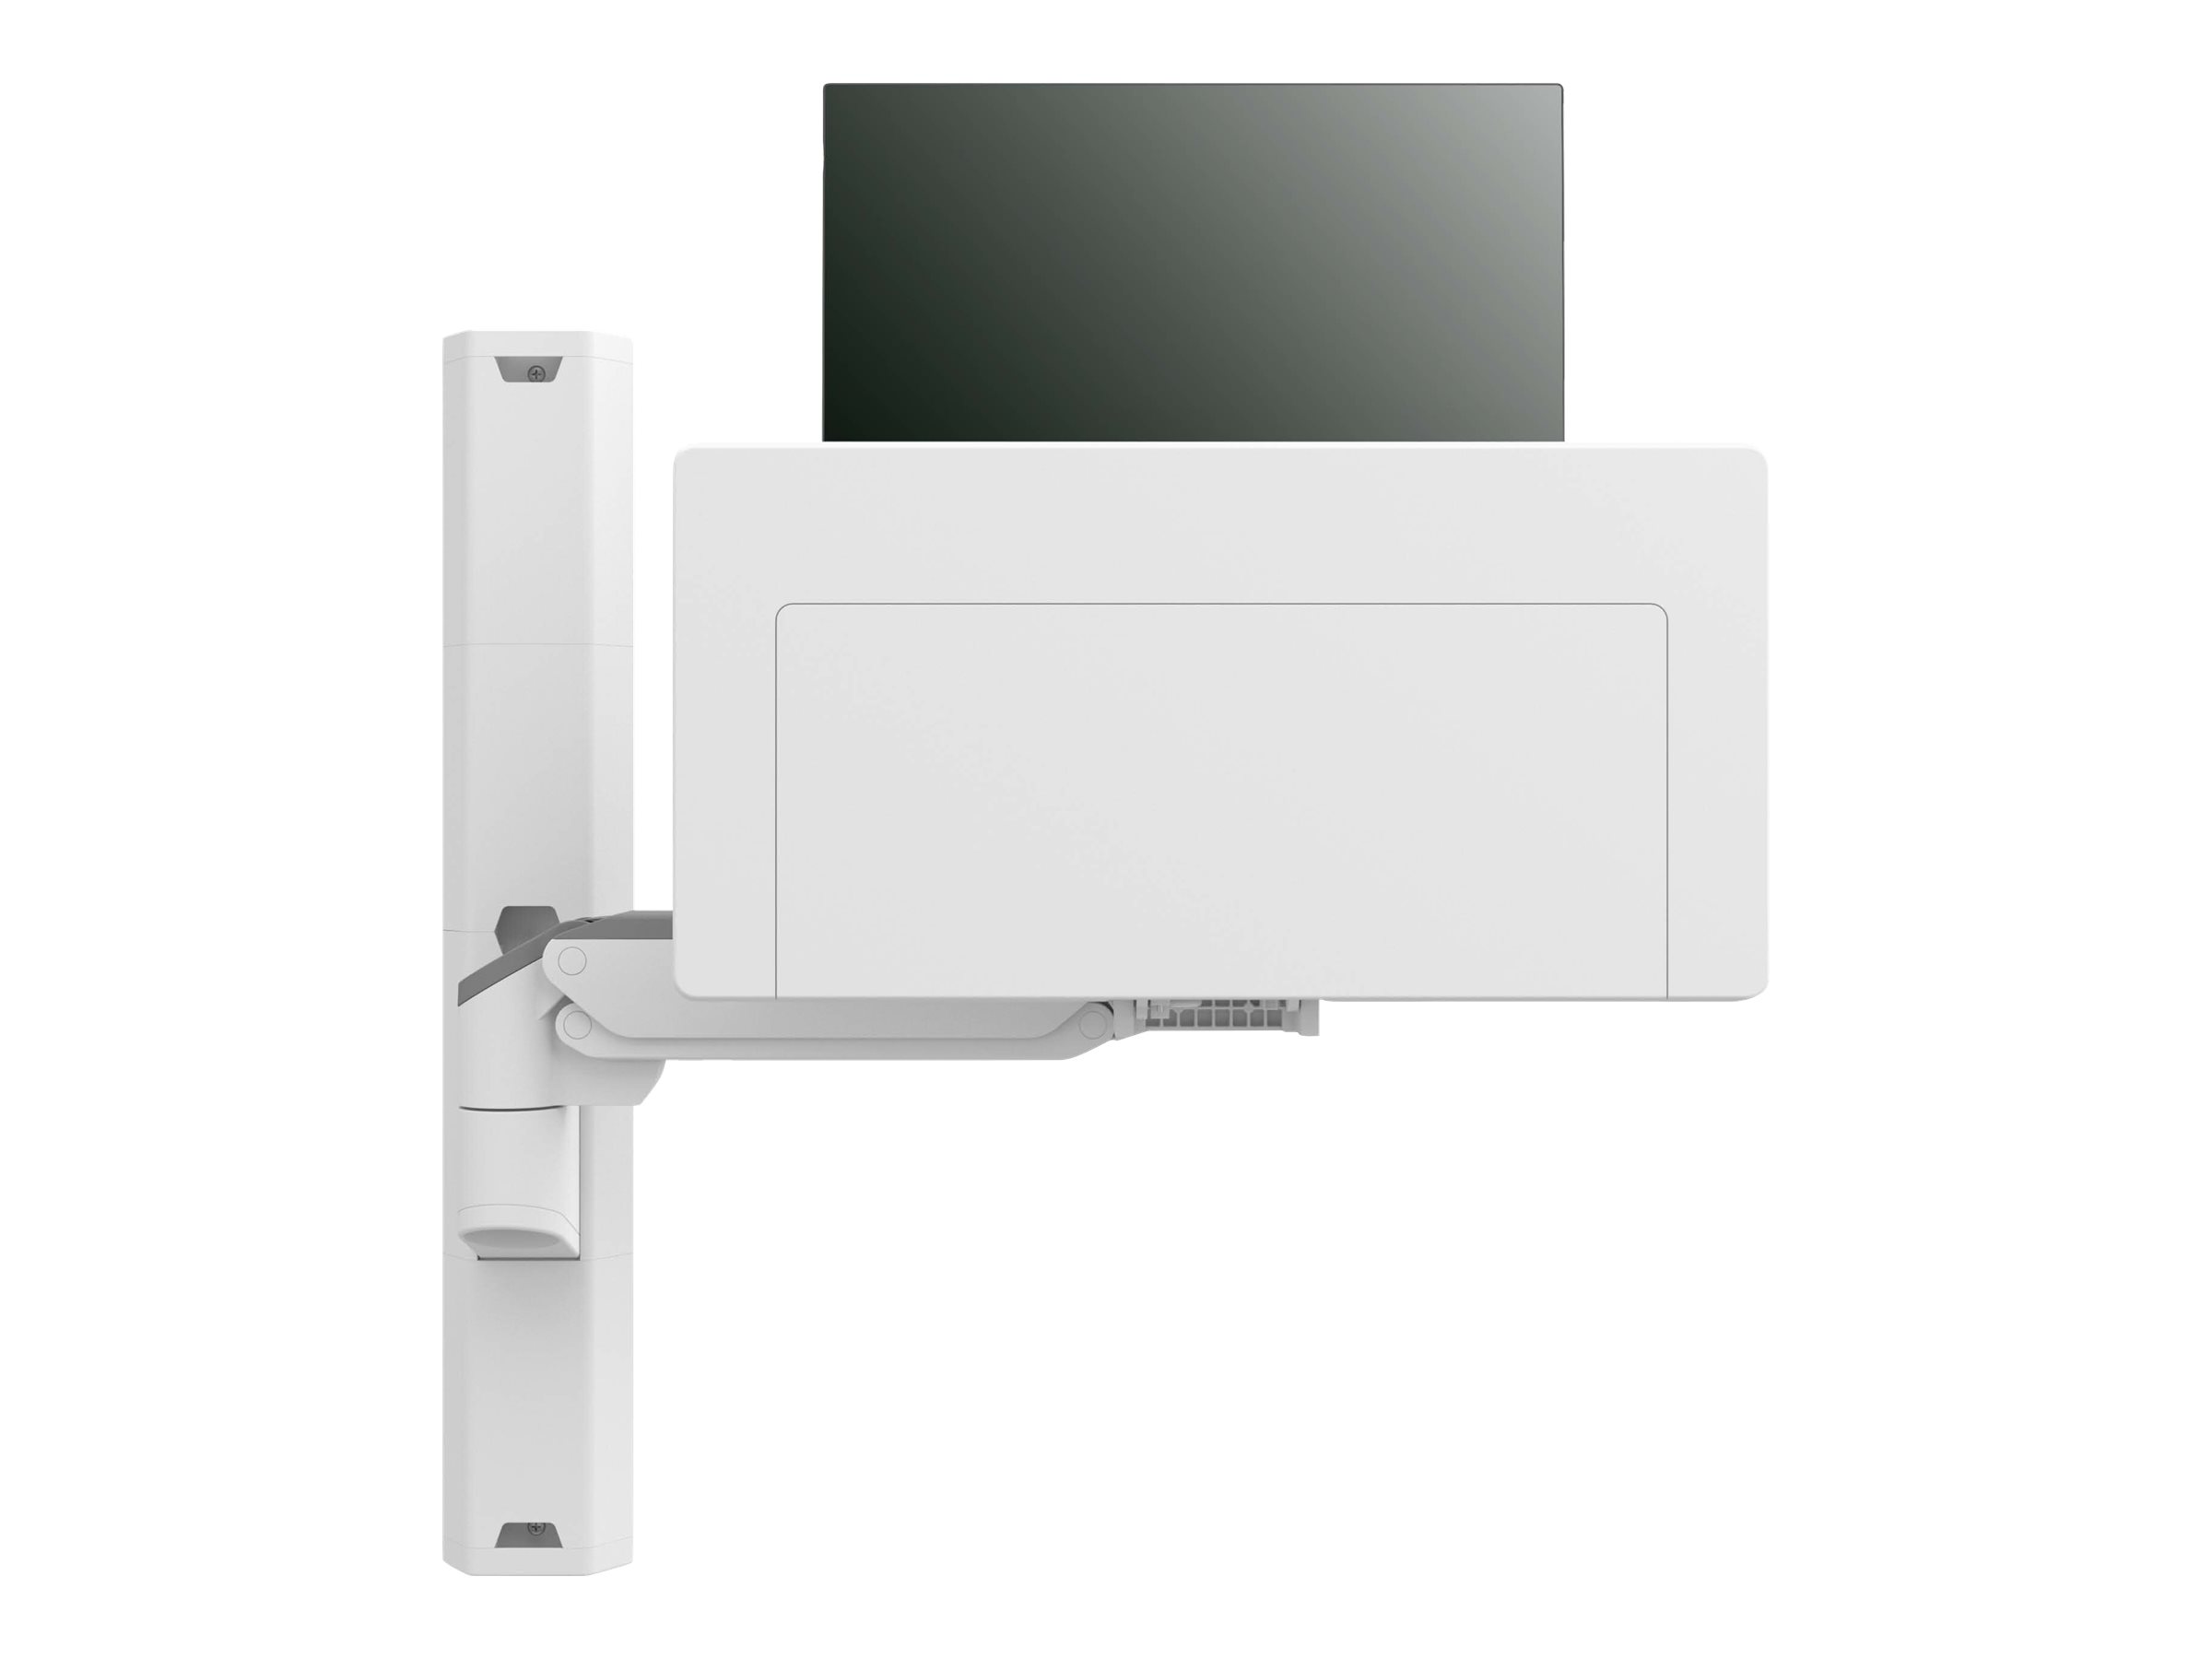 Ergotron CareFit Combo System - Kit de montage (bras articulé, tiroir à clavier, rail mural 34 pouces, base de support mural, adaptateur pour montage sur rail, couvertures de rails muraux, support de montage sur rail) - modulaire - pour écran LCD/équipement PC - plastique, aluminium - blanc - Taille d'écran : jusqu'à 27 pouces - montable sur mur - 45-618-251 - Montages pour TV et moniteur